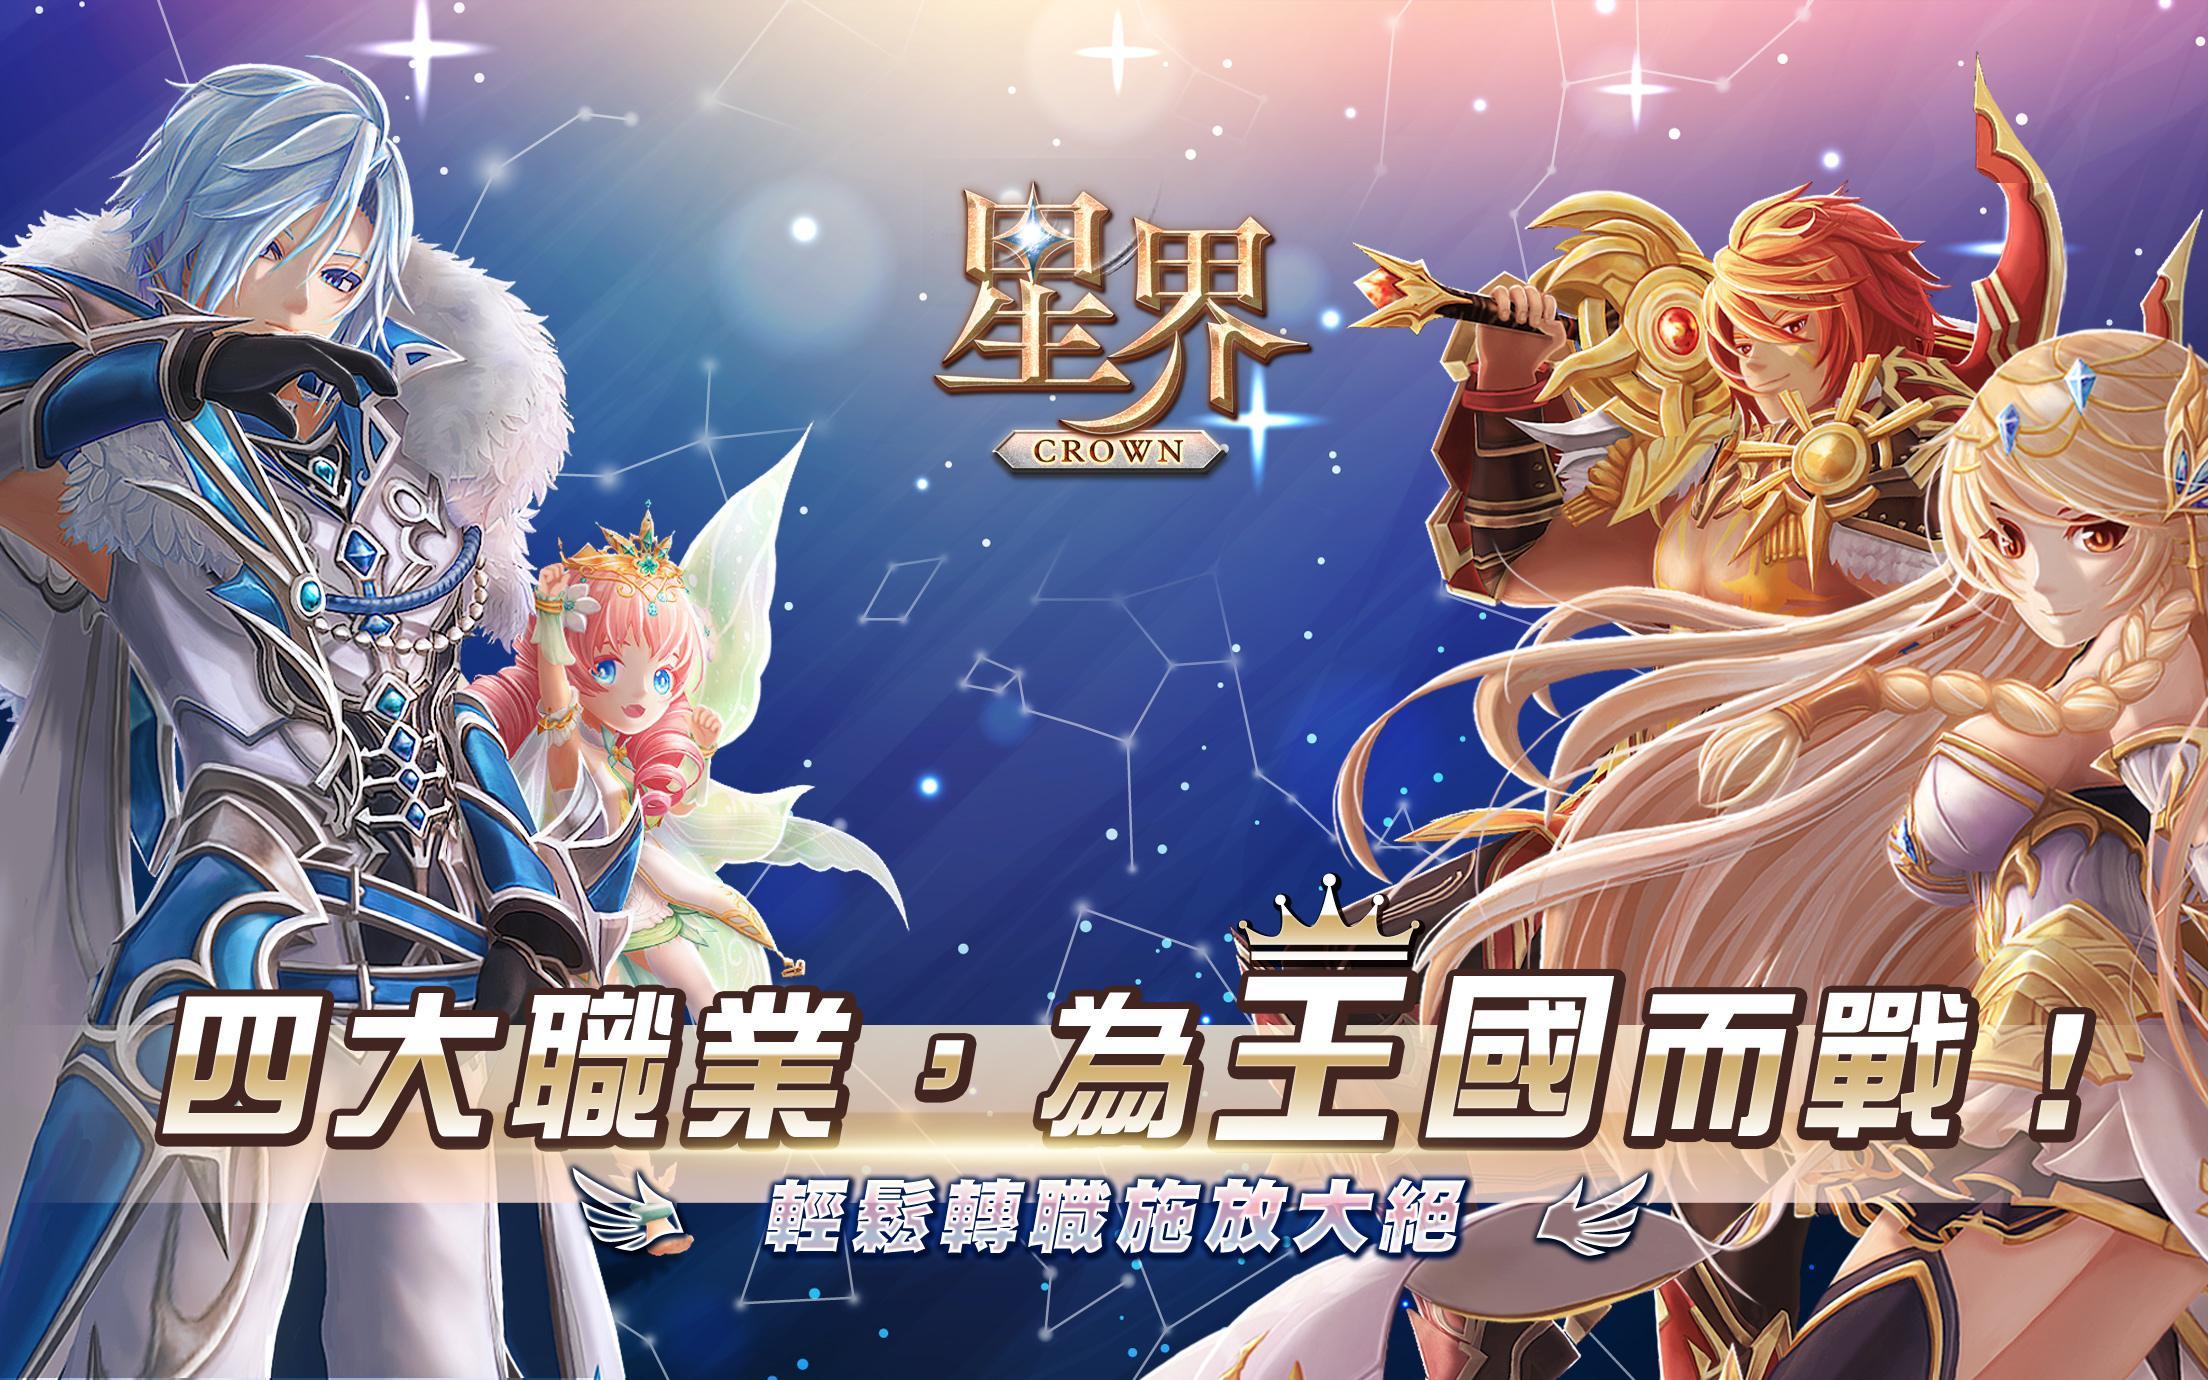 Banner of Astral: The Crown (Versão de Hong Kong e Macau) 11.0.1